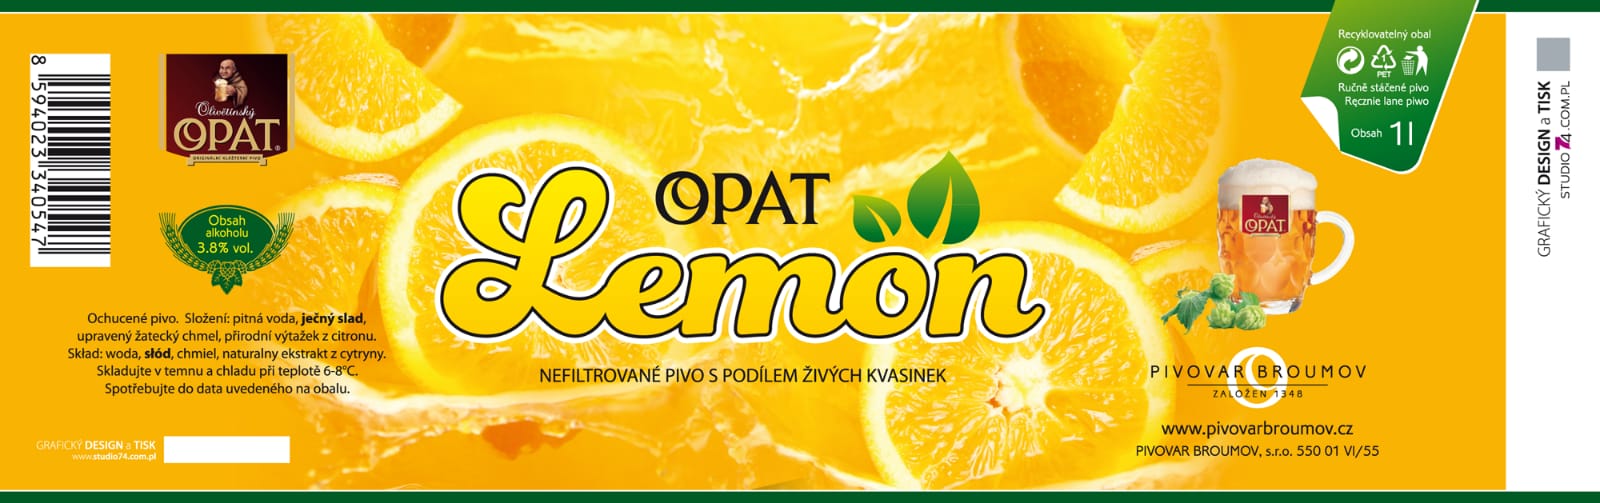 pivovar broumov aktualita lemon